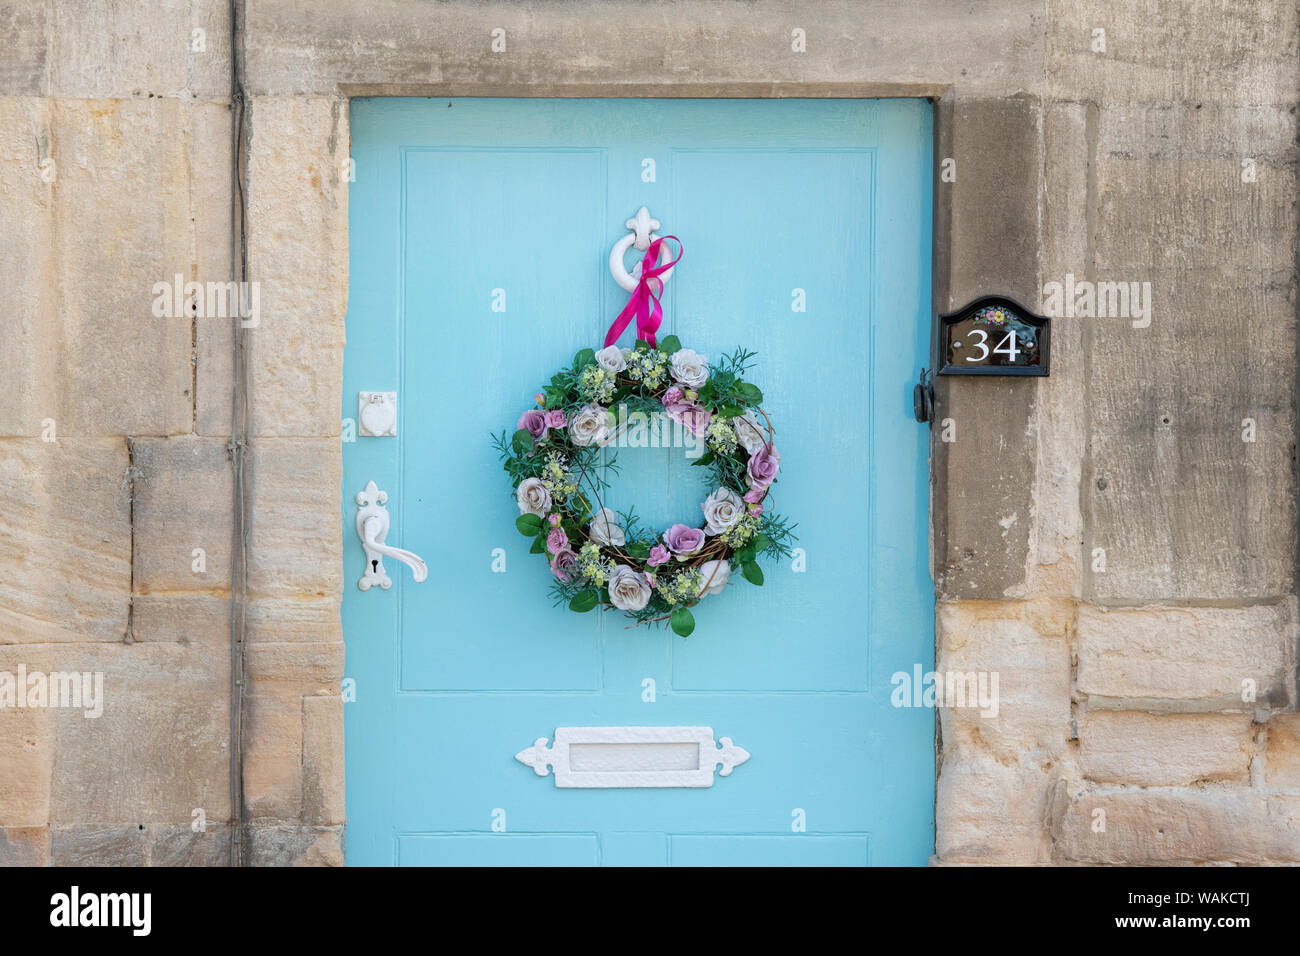 En bois bleu clair de la porte du chalet avec une couronne de fleurs en soie et ruban rose. Winchcombe, Cotswolds, Gloucestershire, Angleterre Banque D'Images